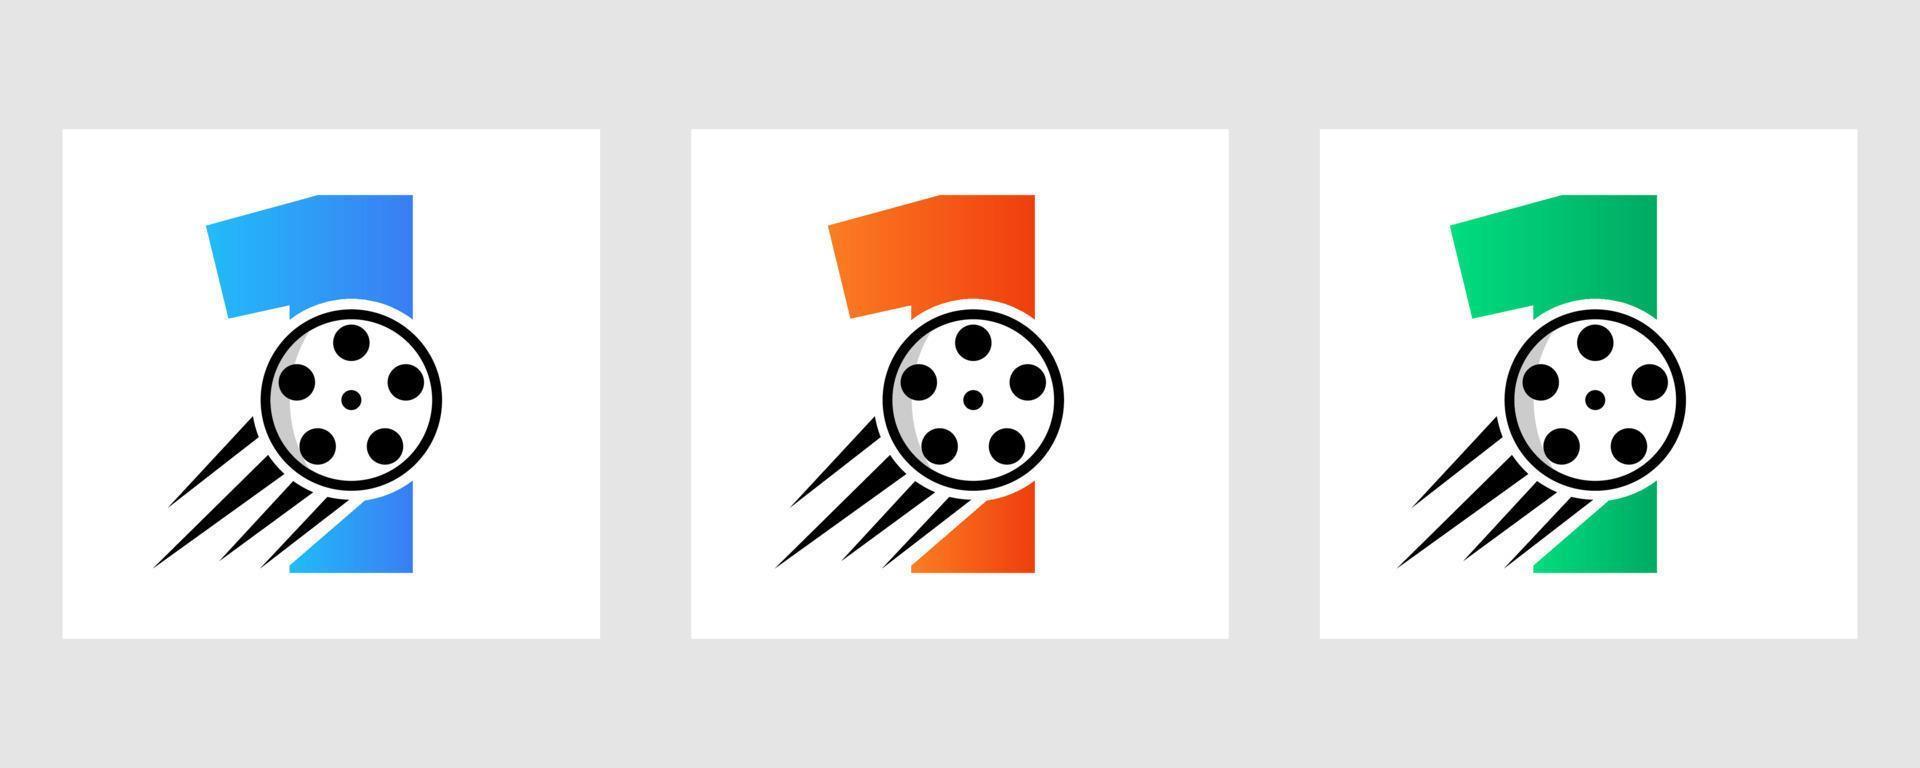 brev 1 filma logotyp begrepp med filma rulle för media tecken, film direktör symbol vektor